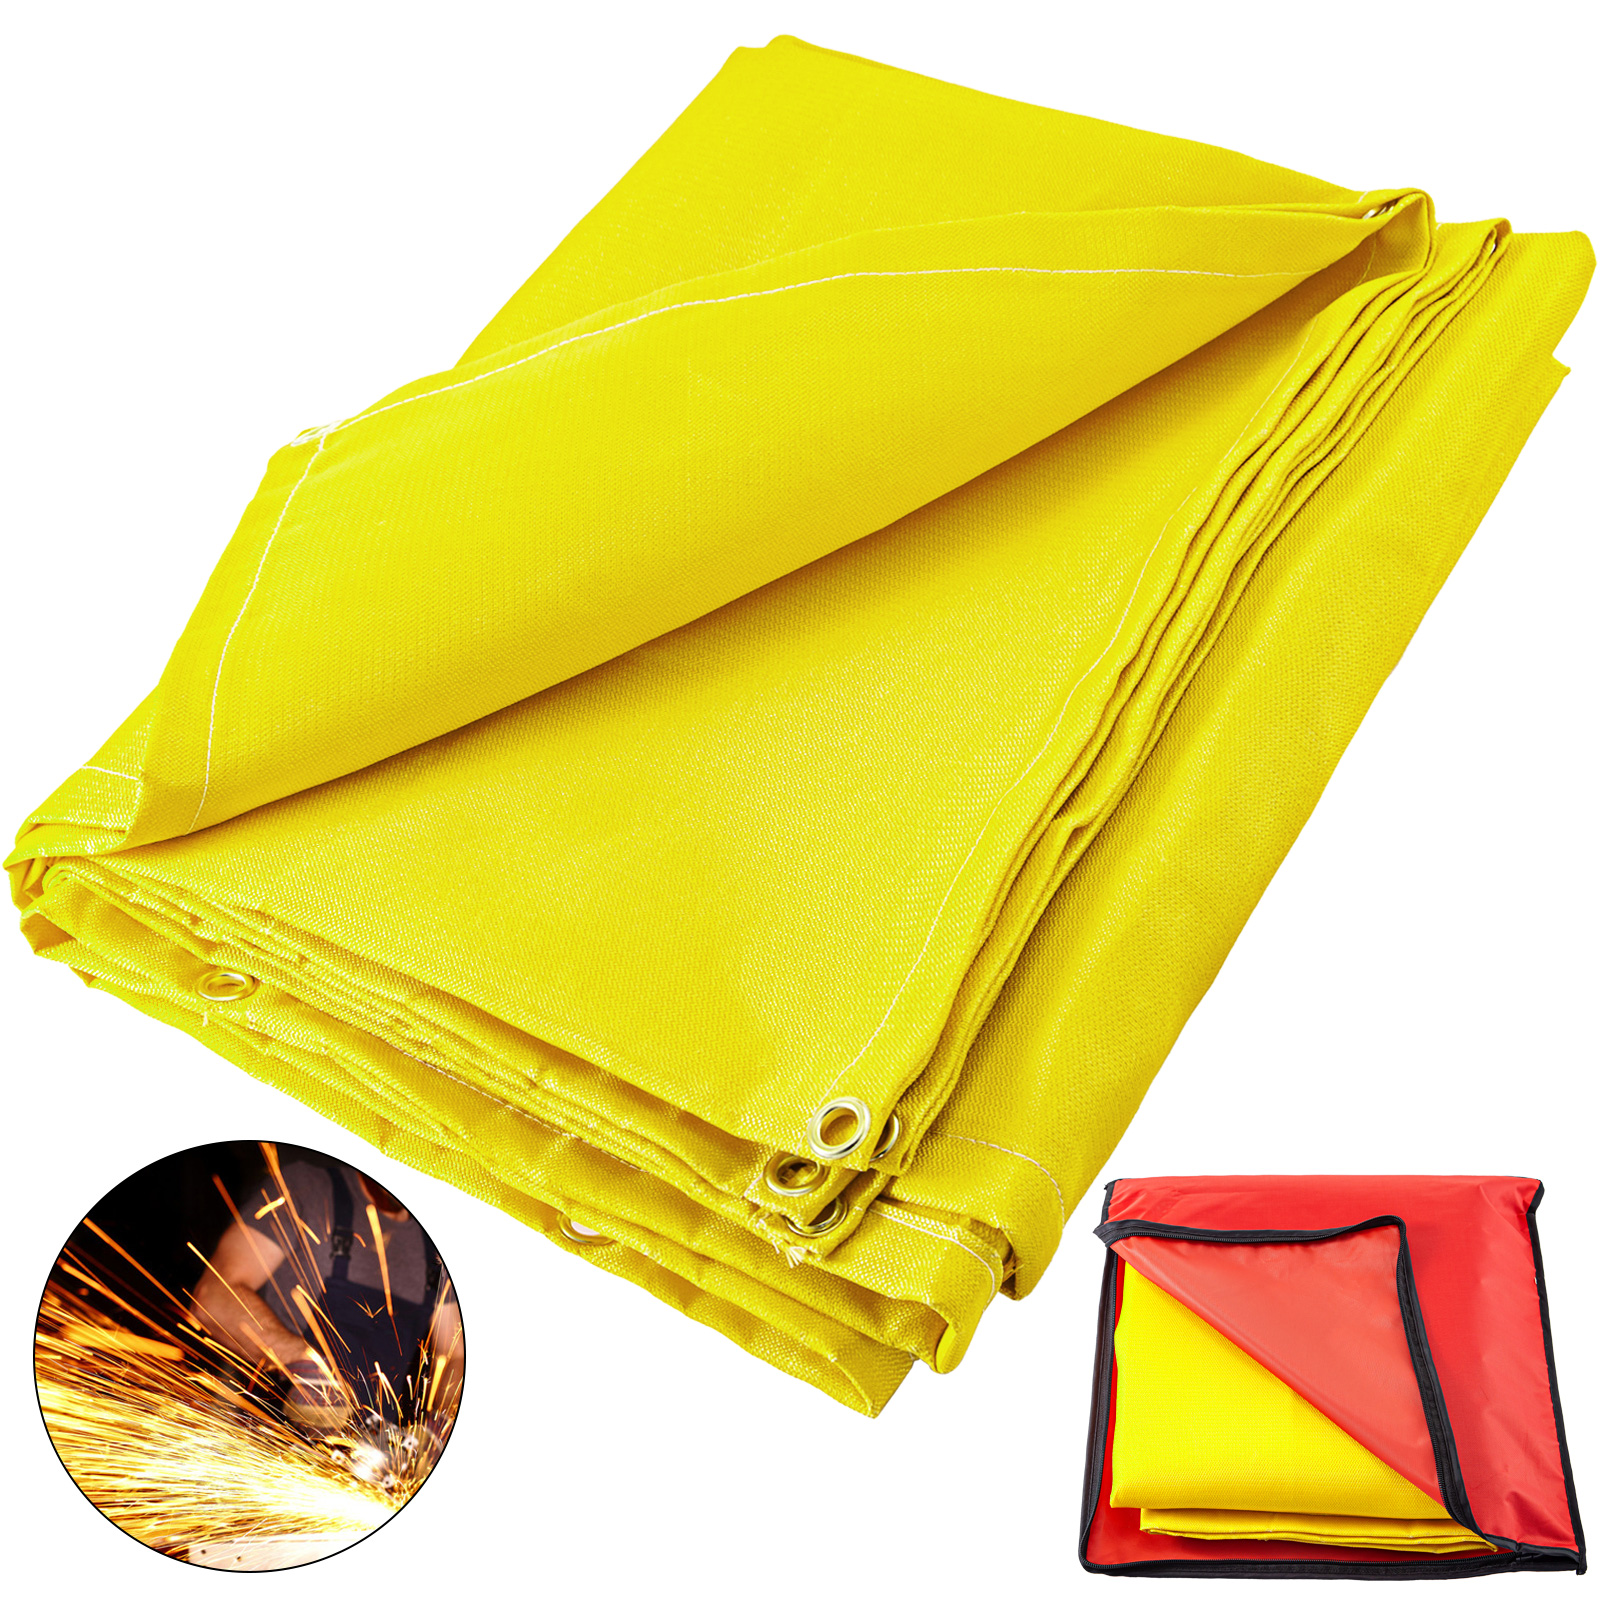 Welding Blanket Fiberglass Blanket 10 X 10 Ft Fire Retardant Blanket Golden от Vevor Many GEOs